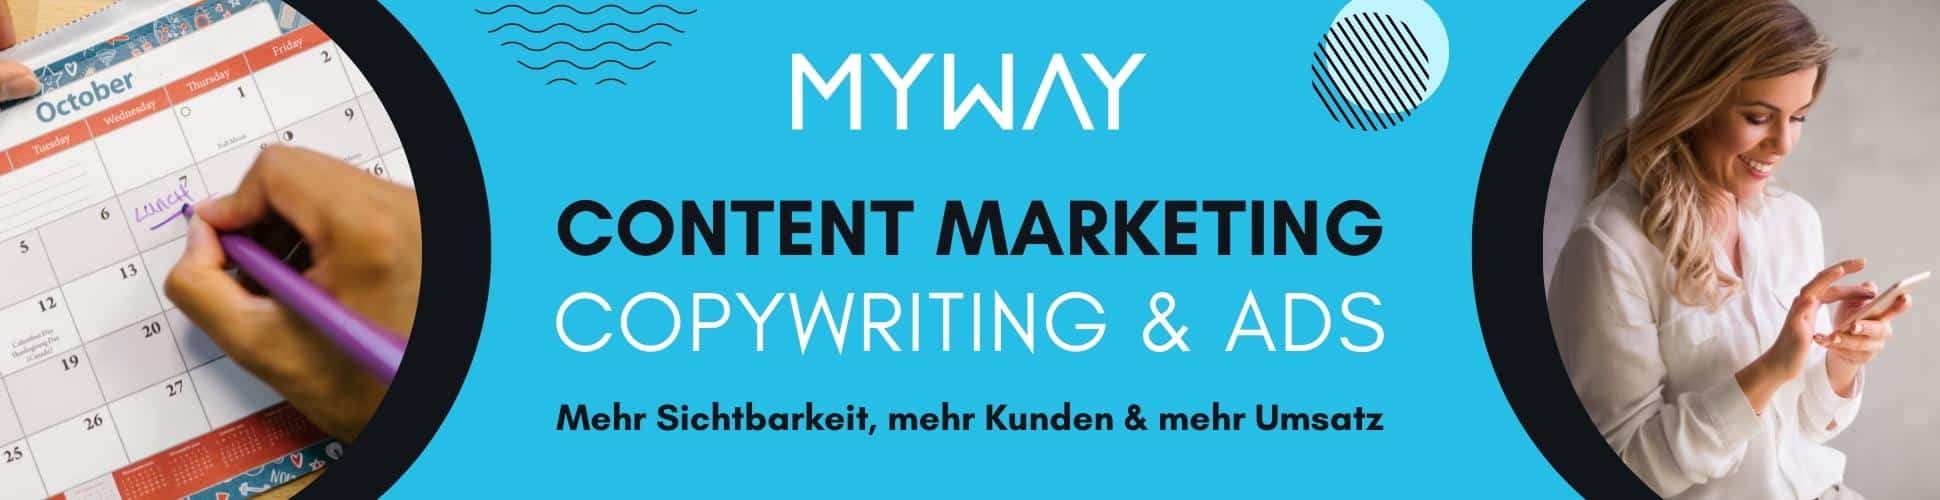 myway digital marketing pakete content marketing copywriting und werbeanzeigen